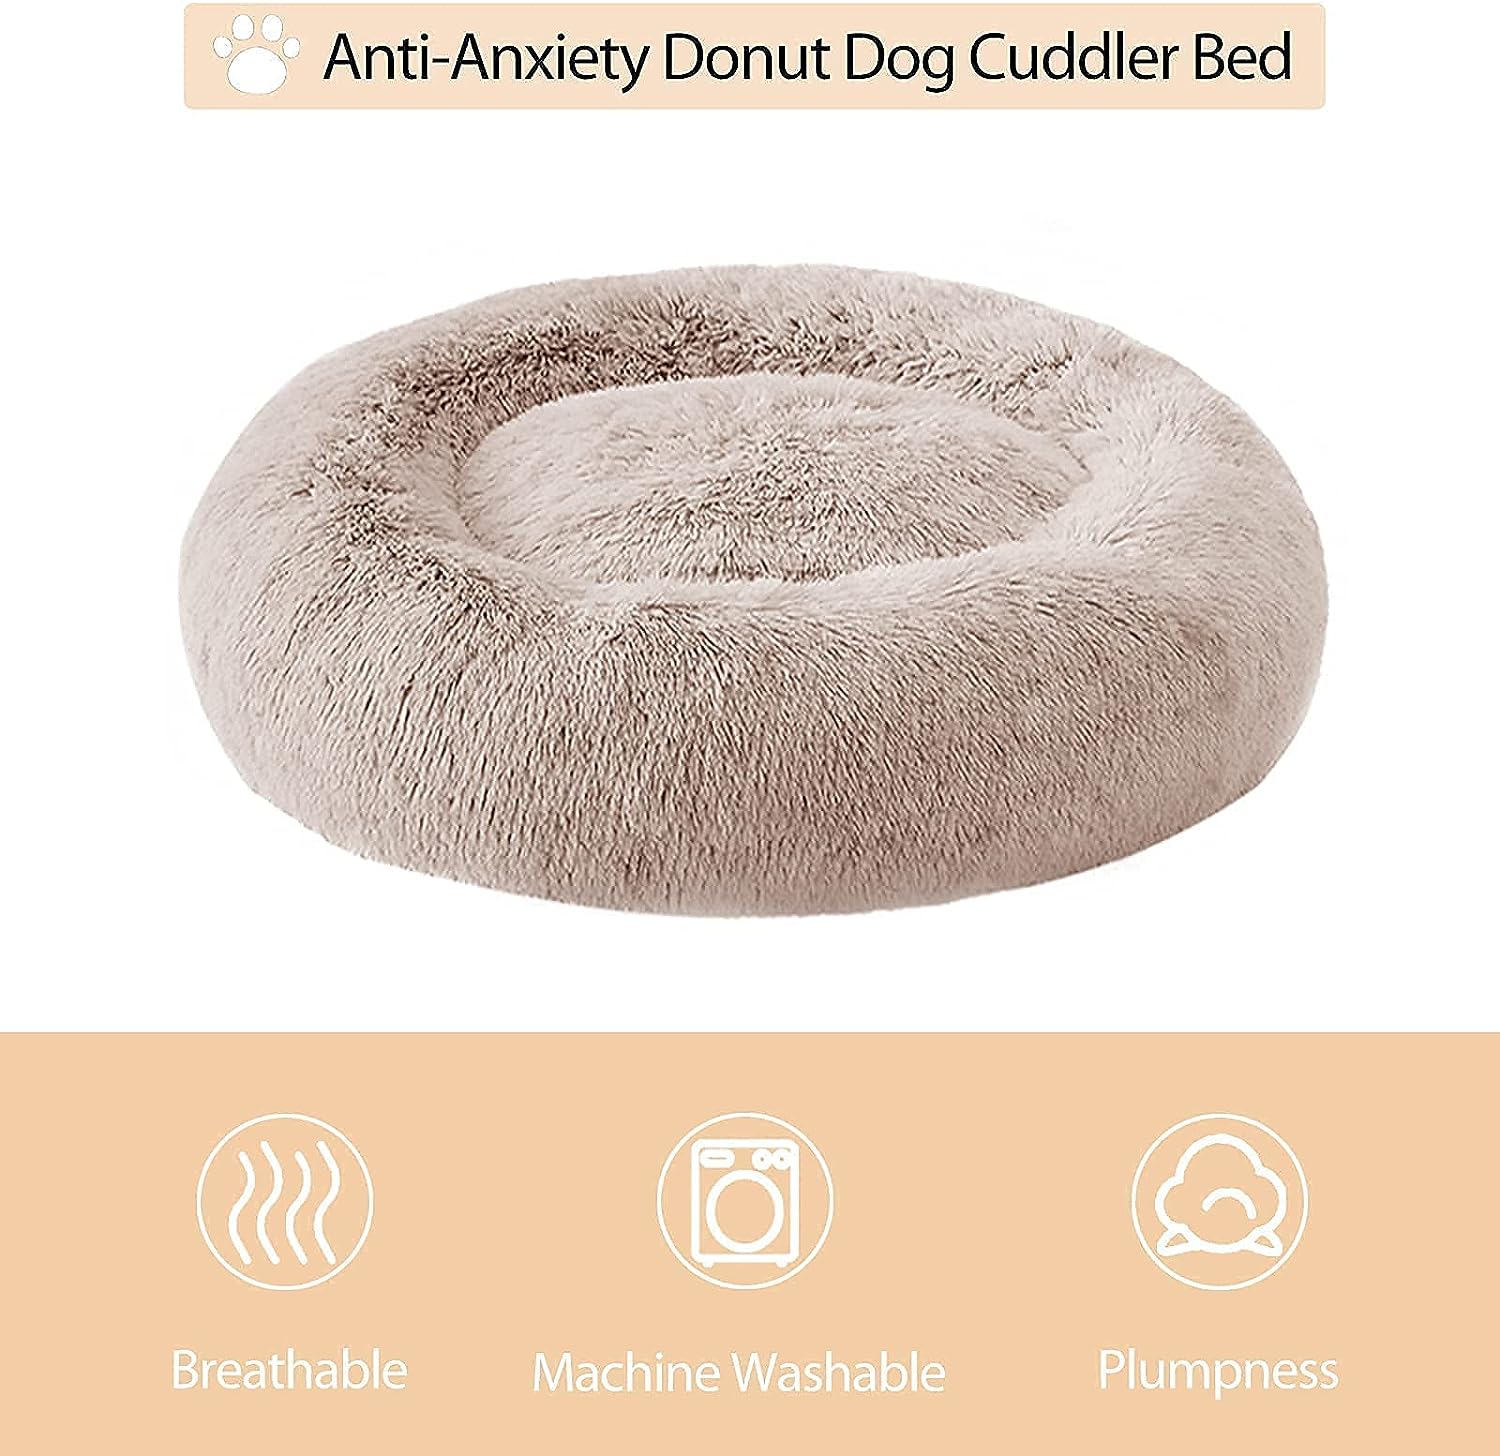 Cama calmante para perros y gatos, anti-ansiedad, de piel sintética, con forma